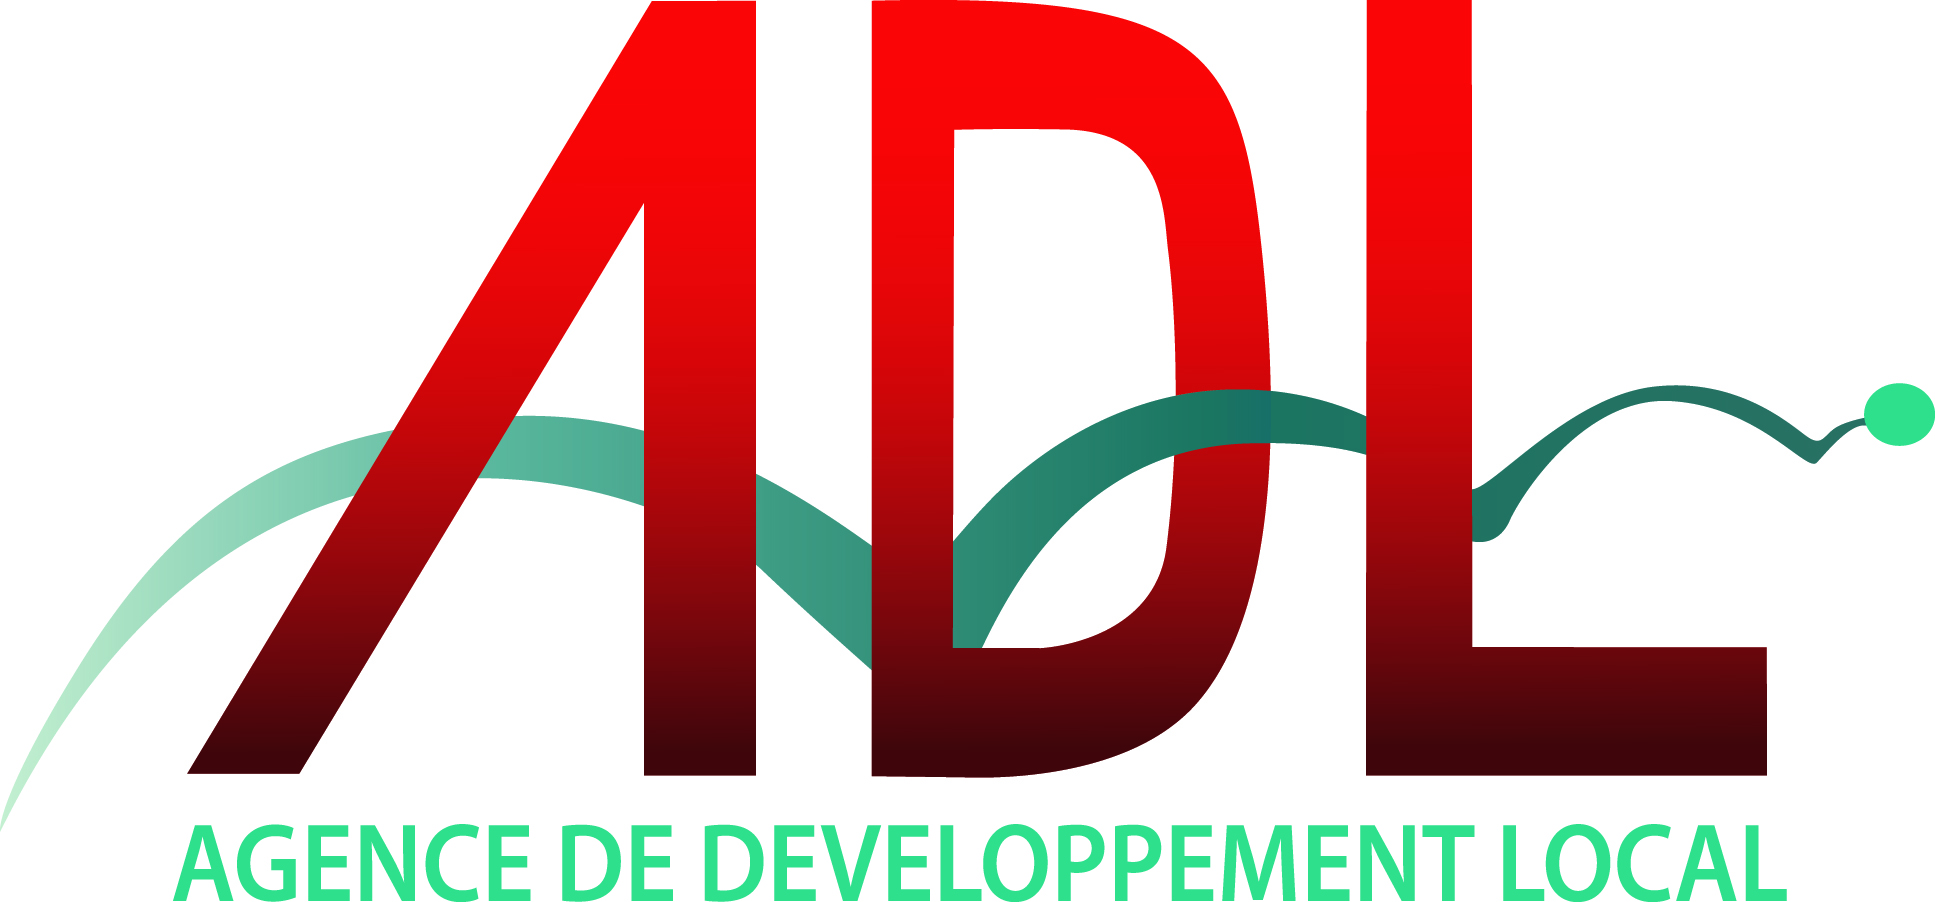 ADL-logo 300dpi.jpg